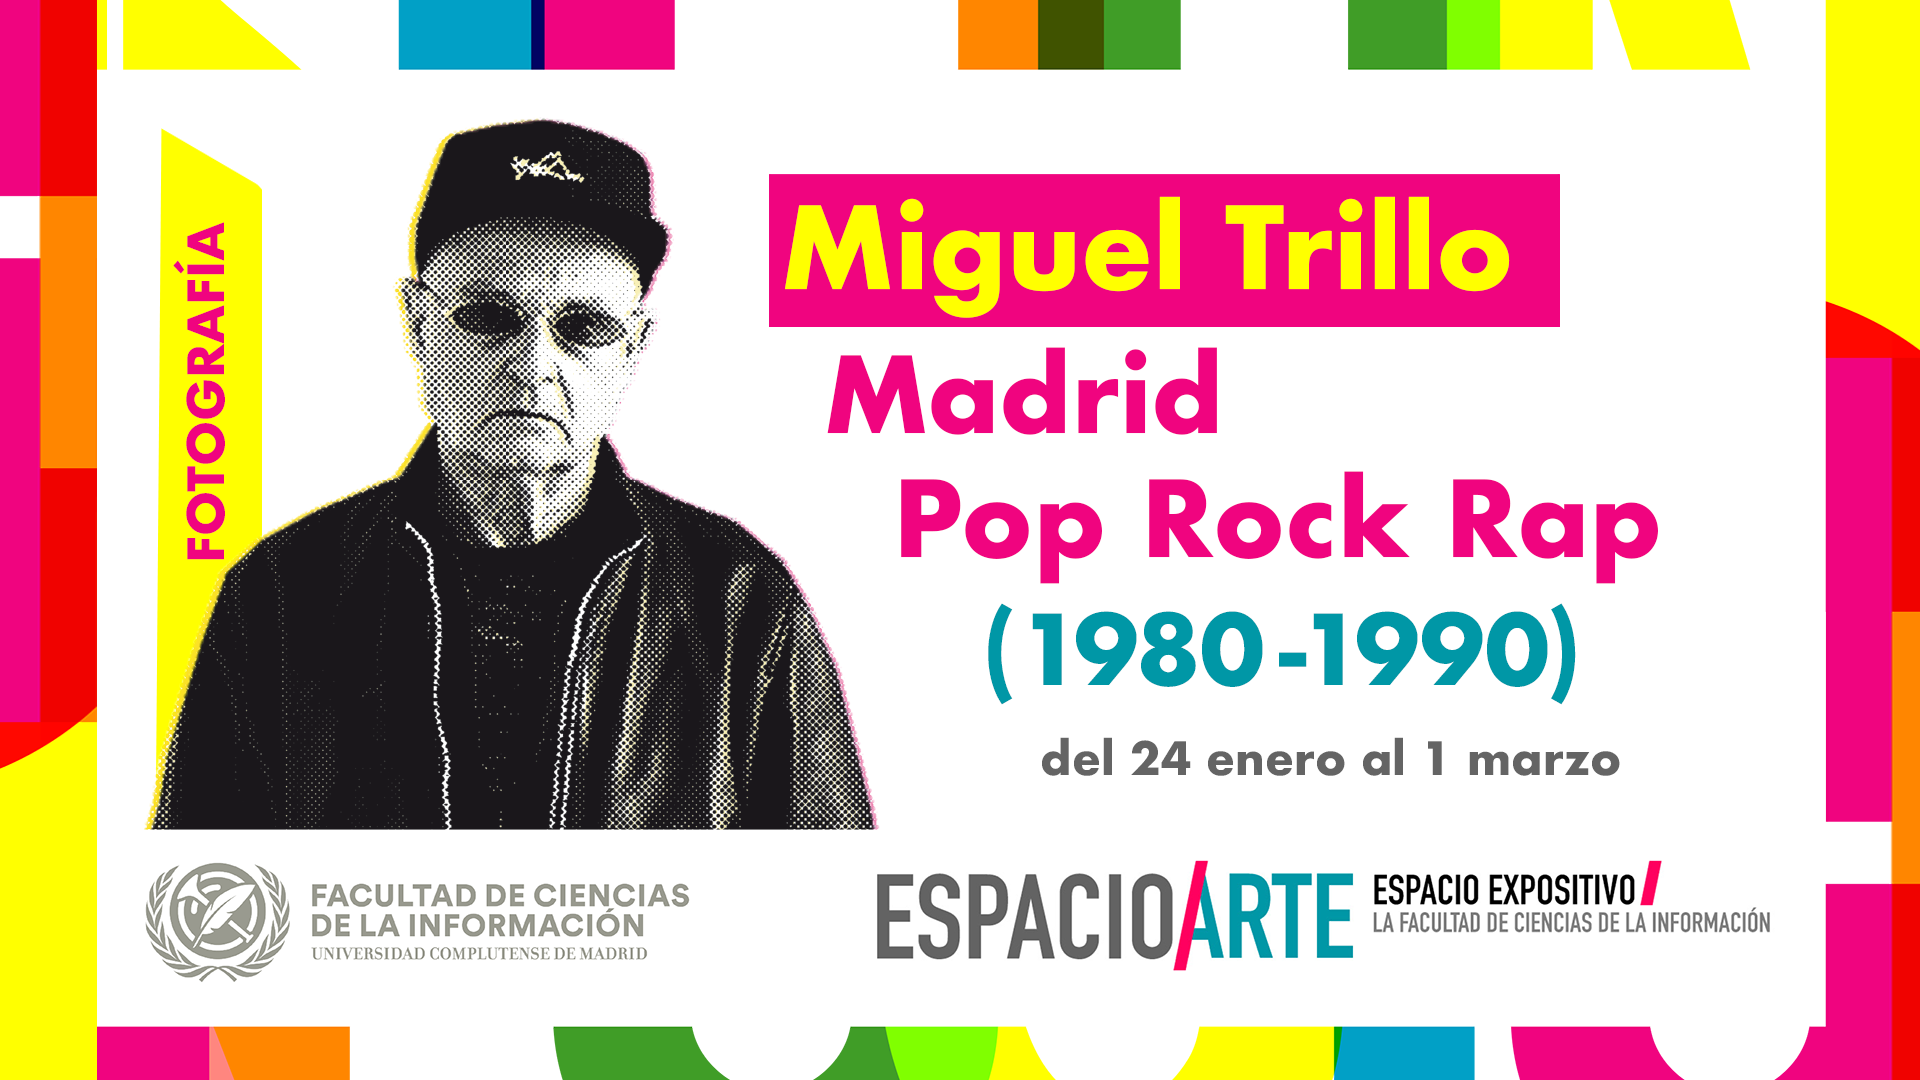 Nueva exposición en la Facultad: “Miguel Trillo: Madrid, Pop, Rock, Rap (1980-1990)”